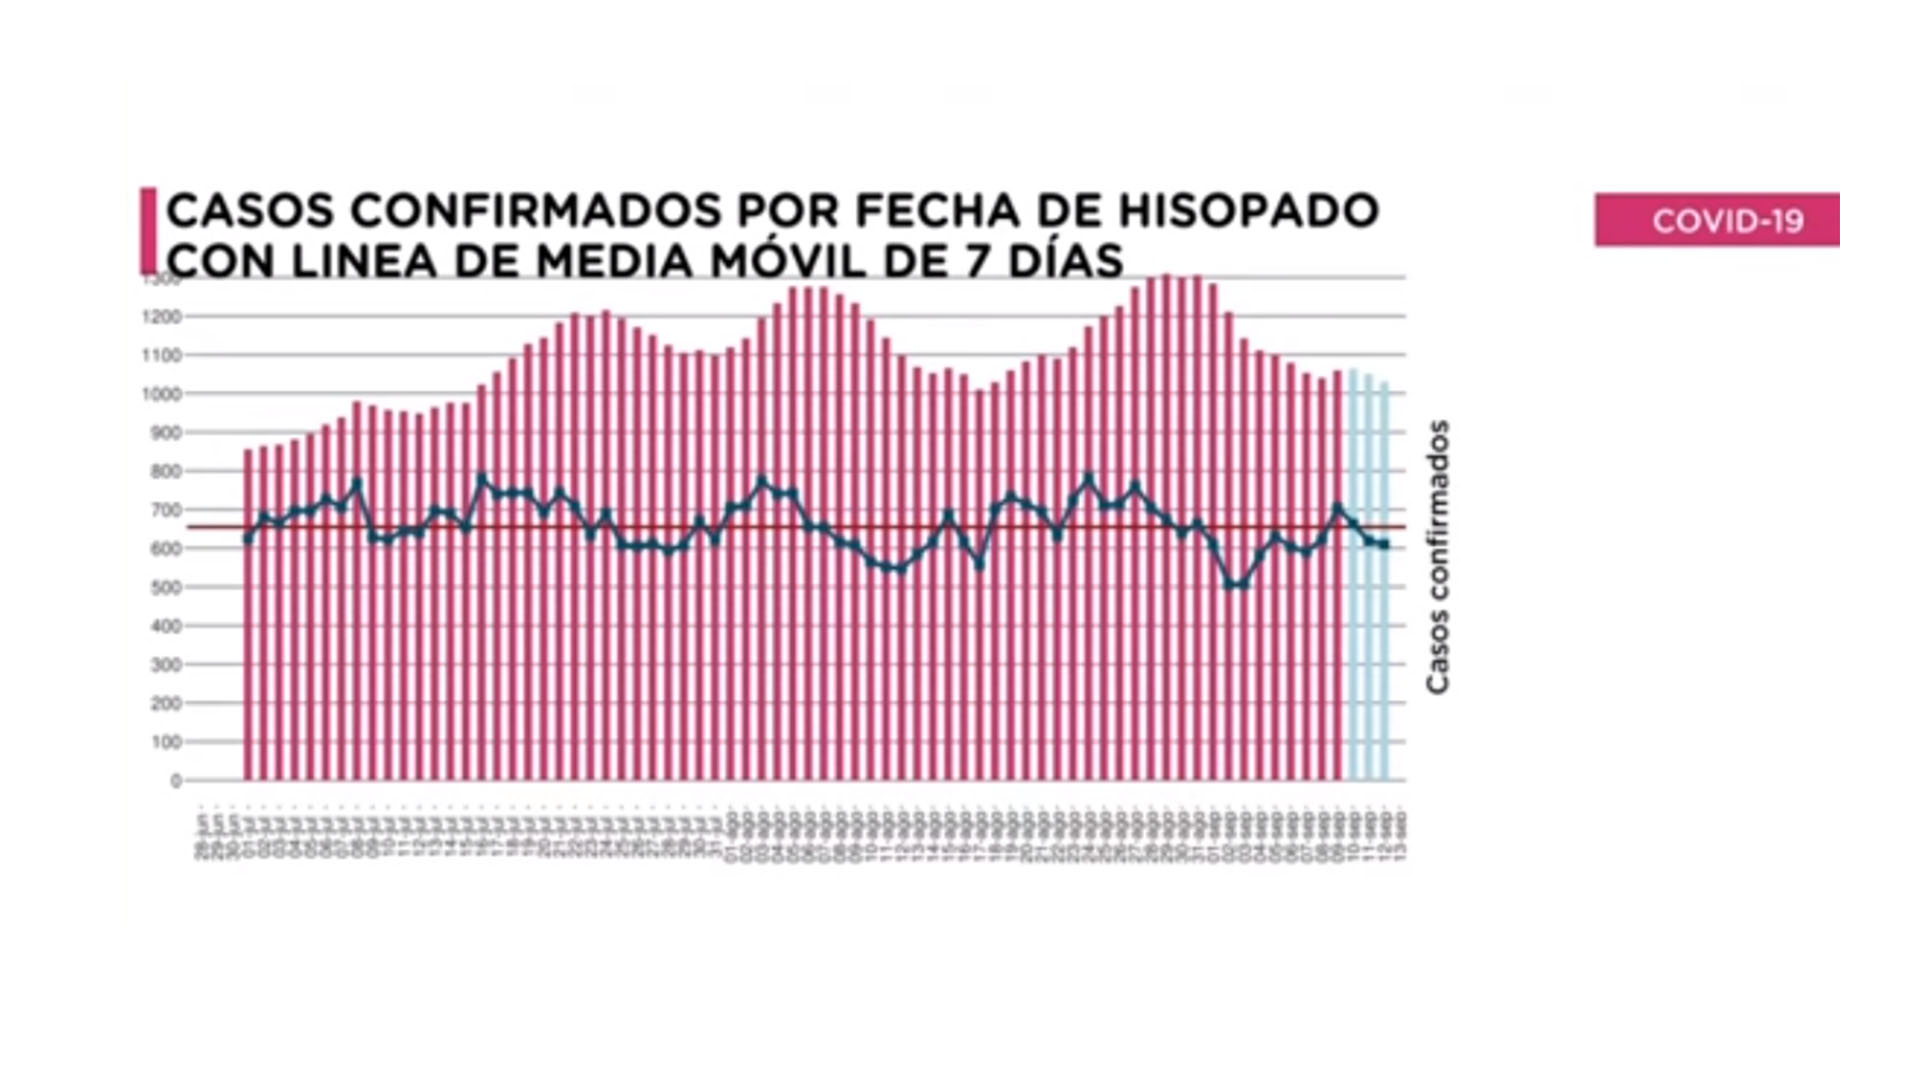 Media móvil de casos de la Ciudad de Buenos Aires. Marcó un descenso en los últimos días. Los casos se trasladan al interior de la Argentina